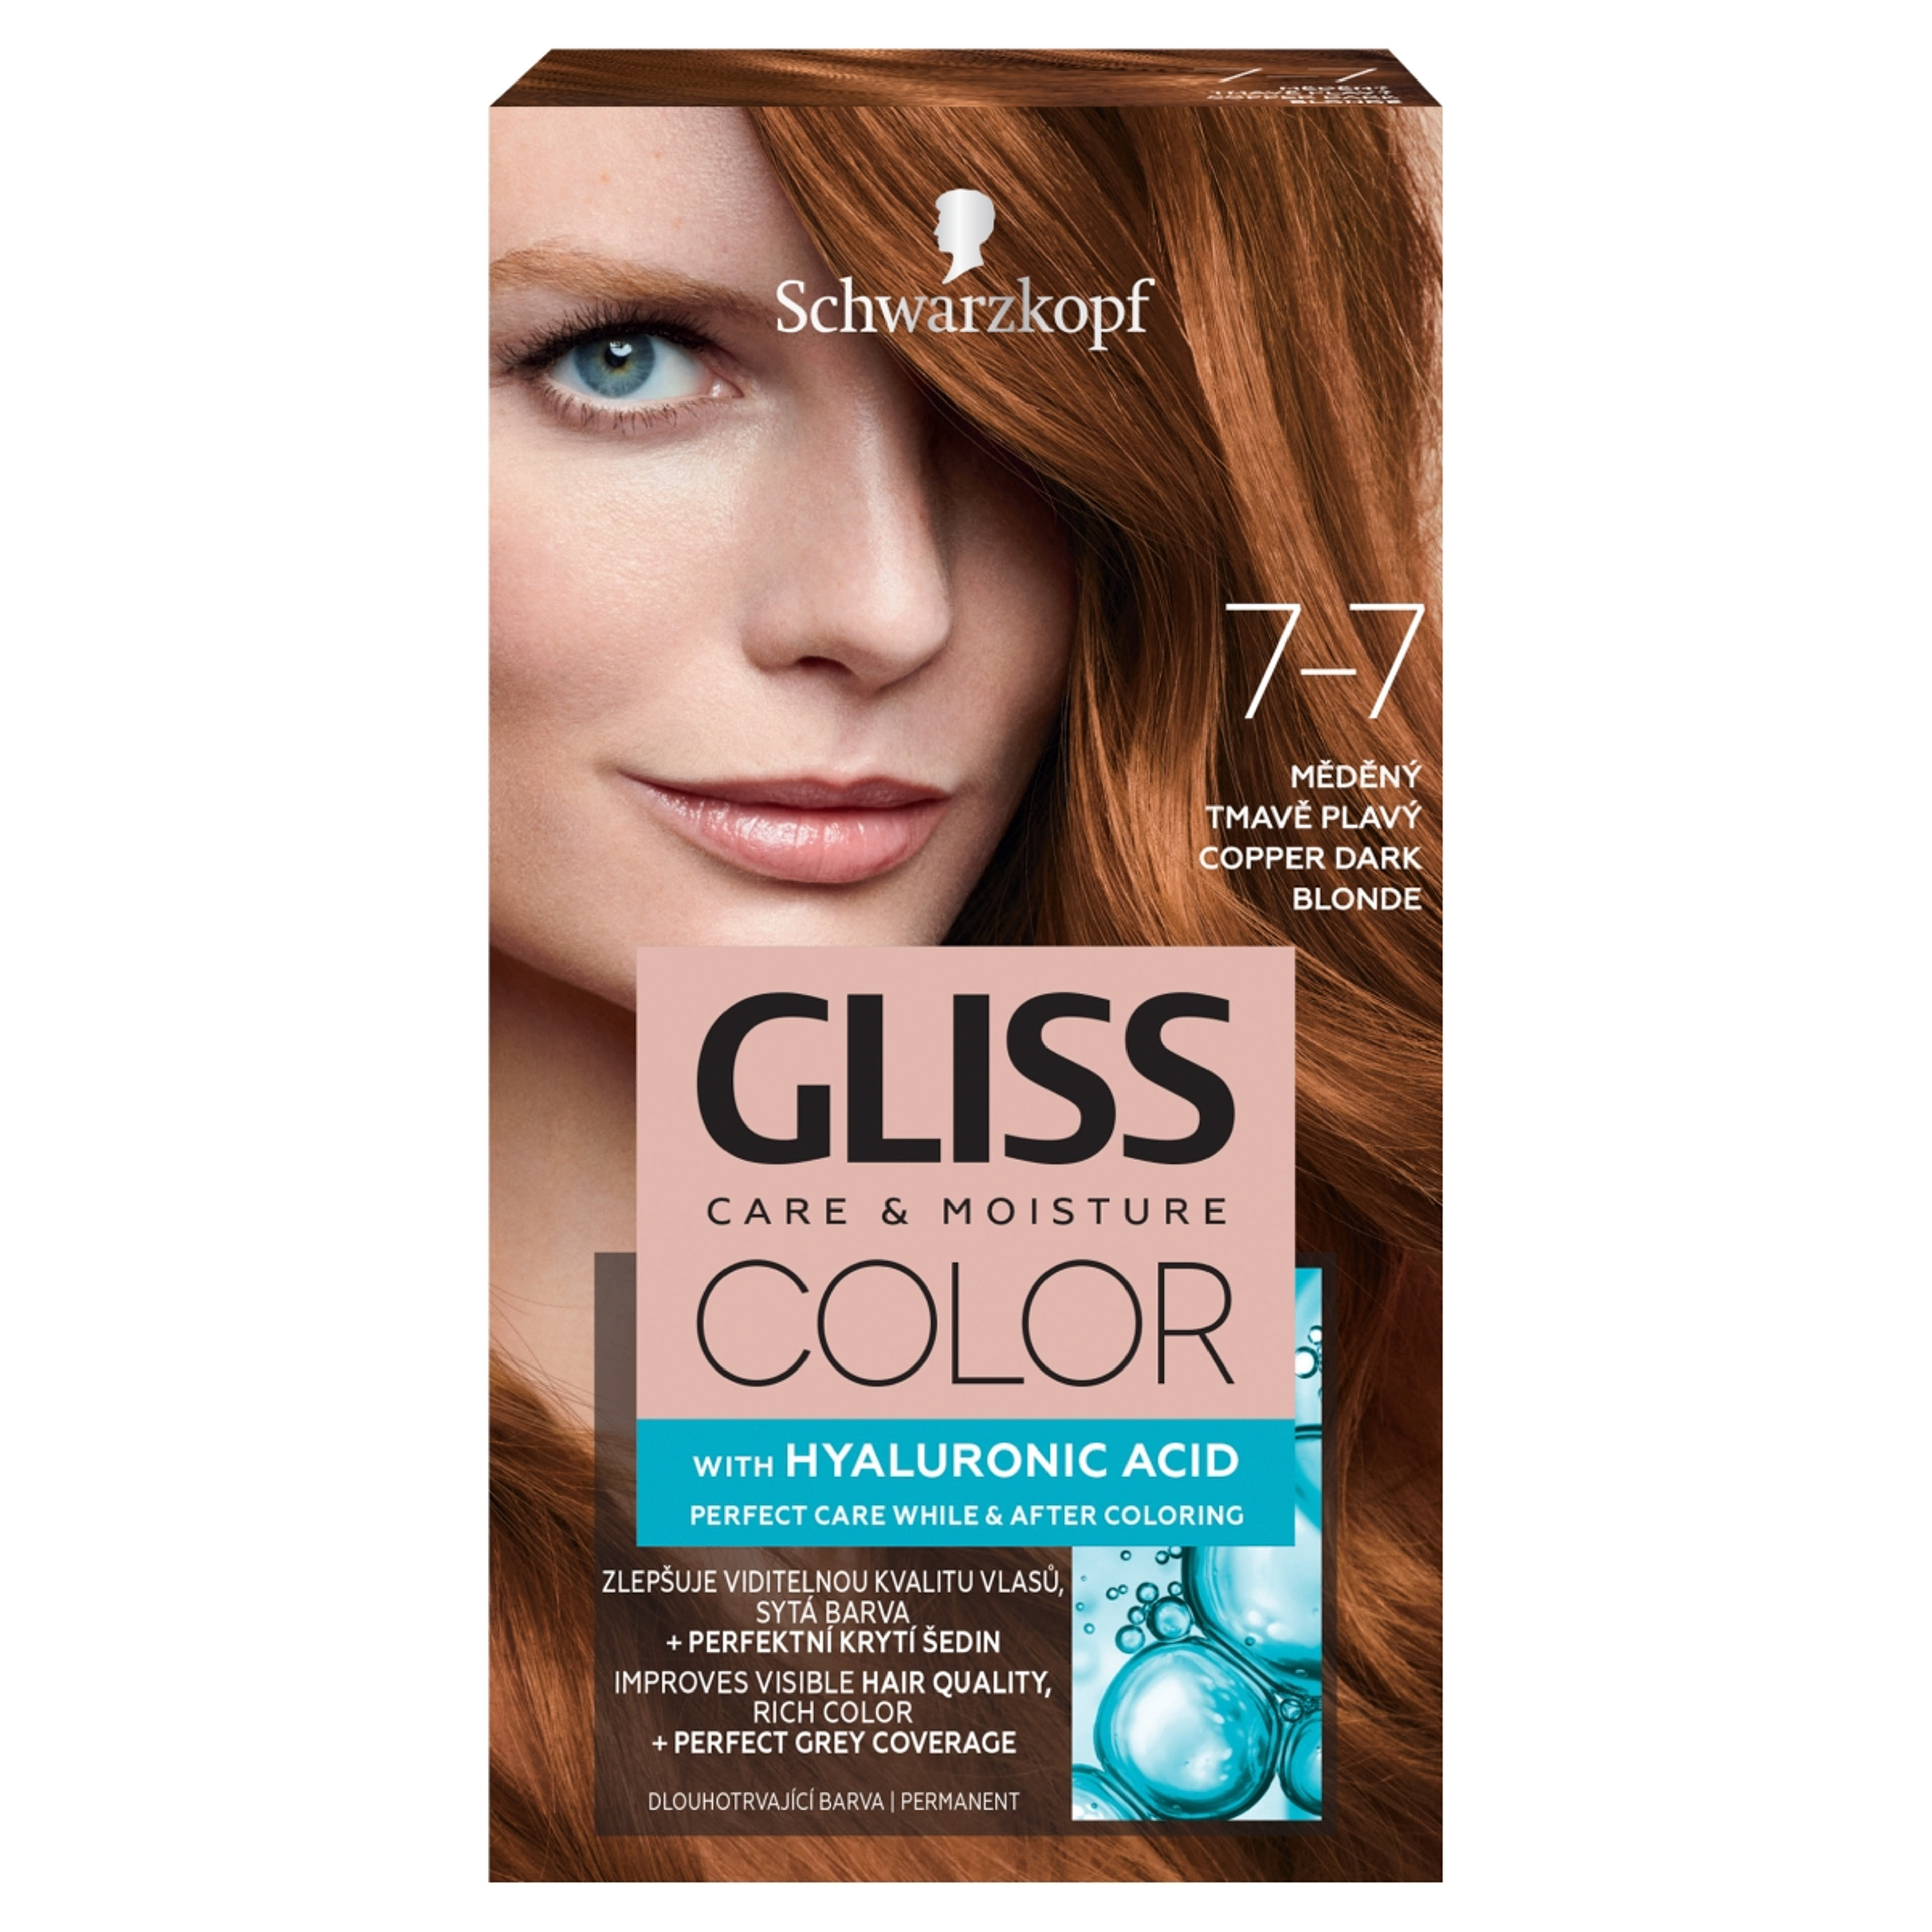 Gliss Color tartós hajfesték 7-7 Rezes sötétszőke - 1 db